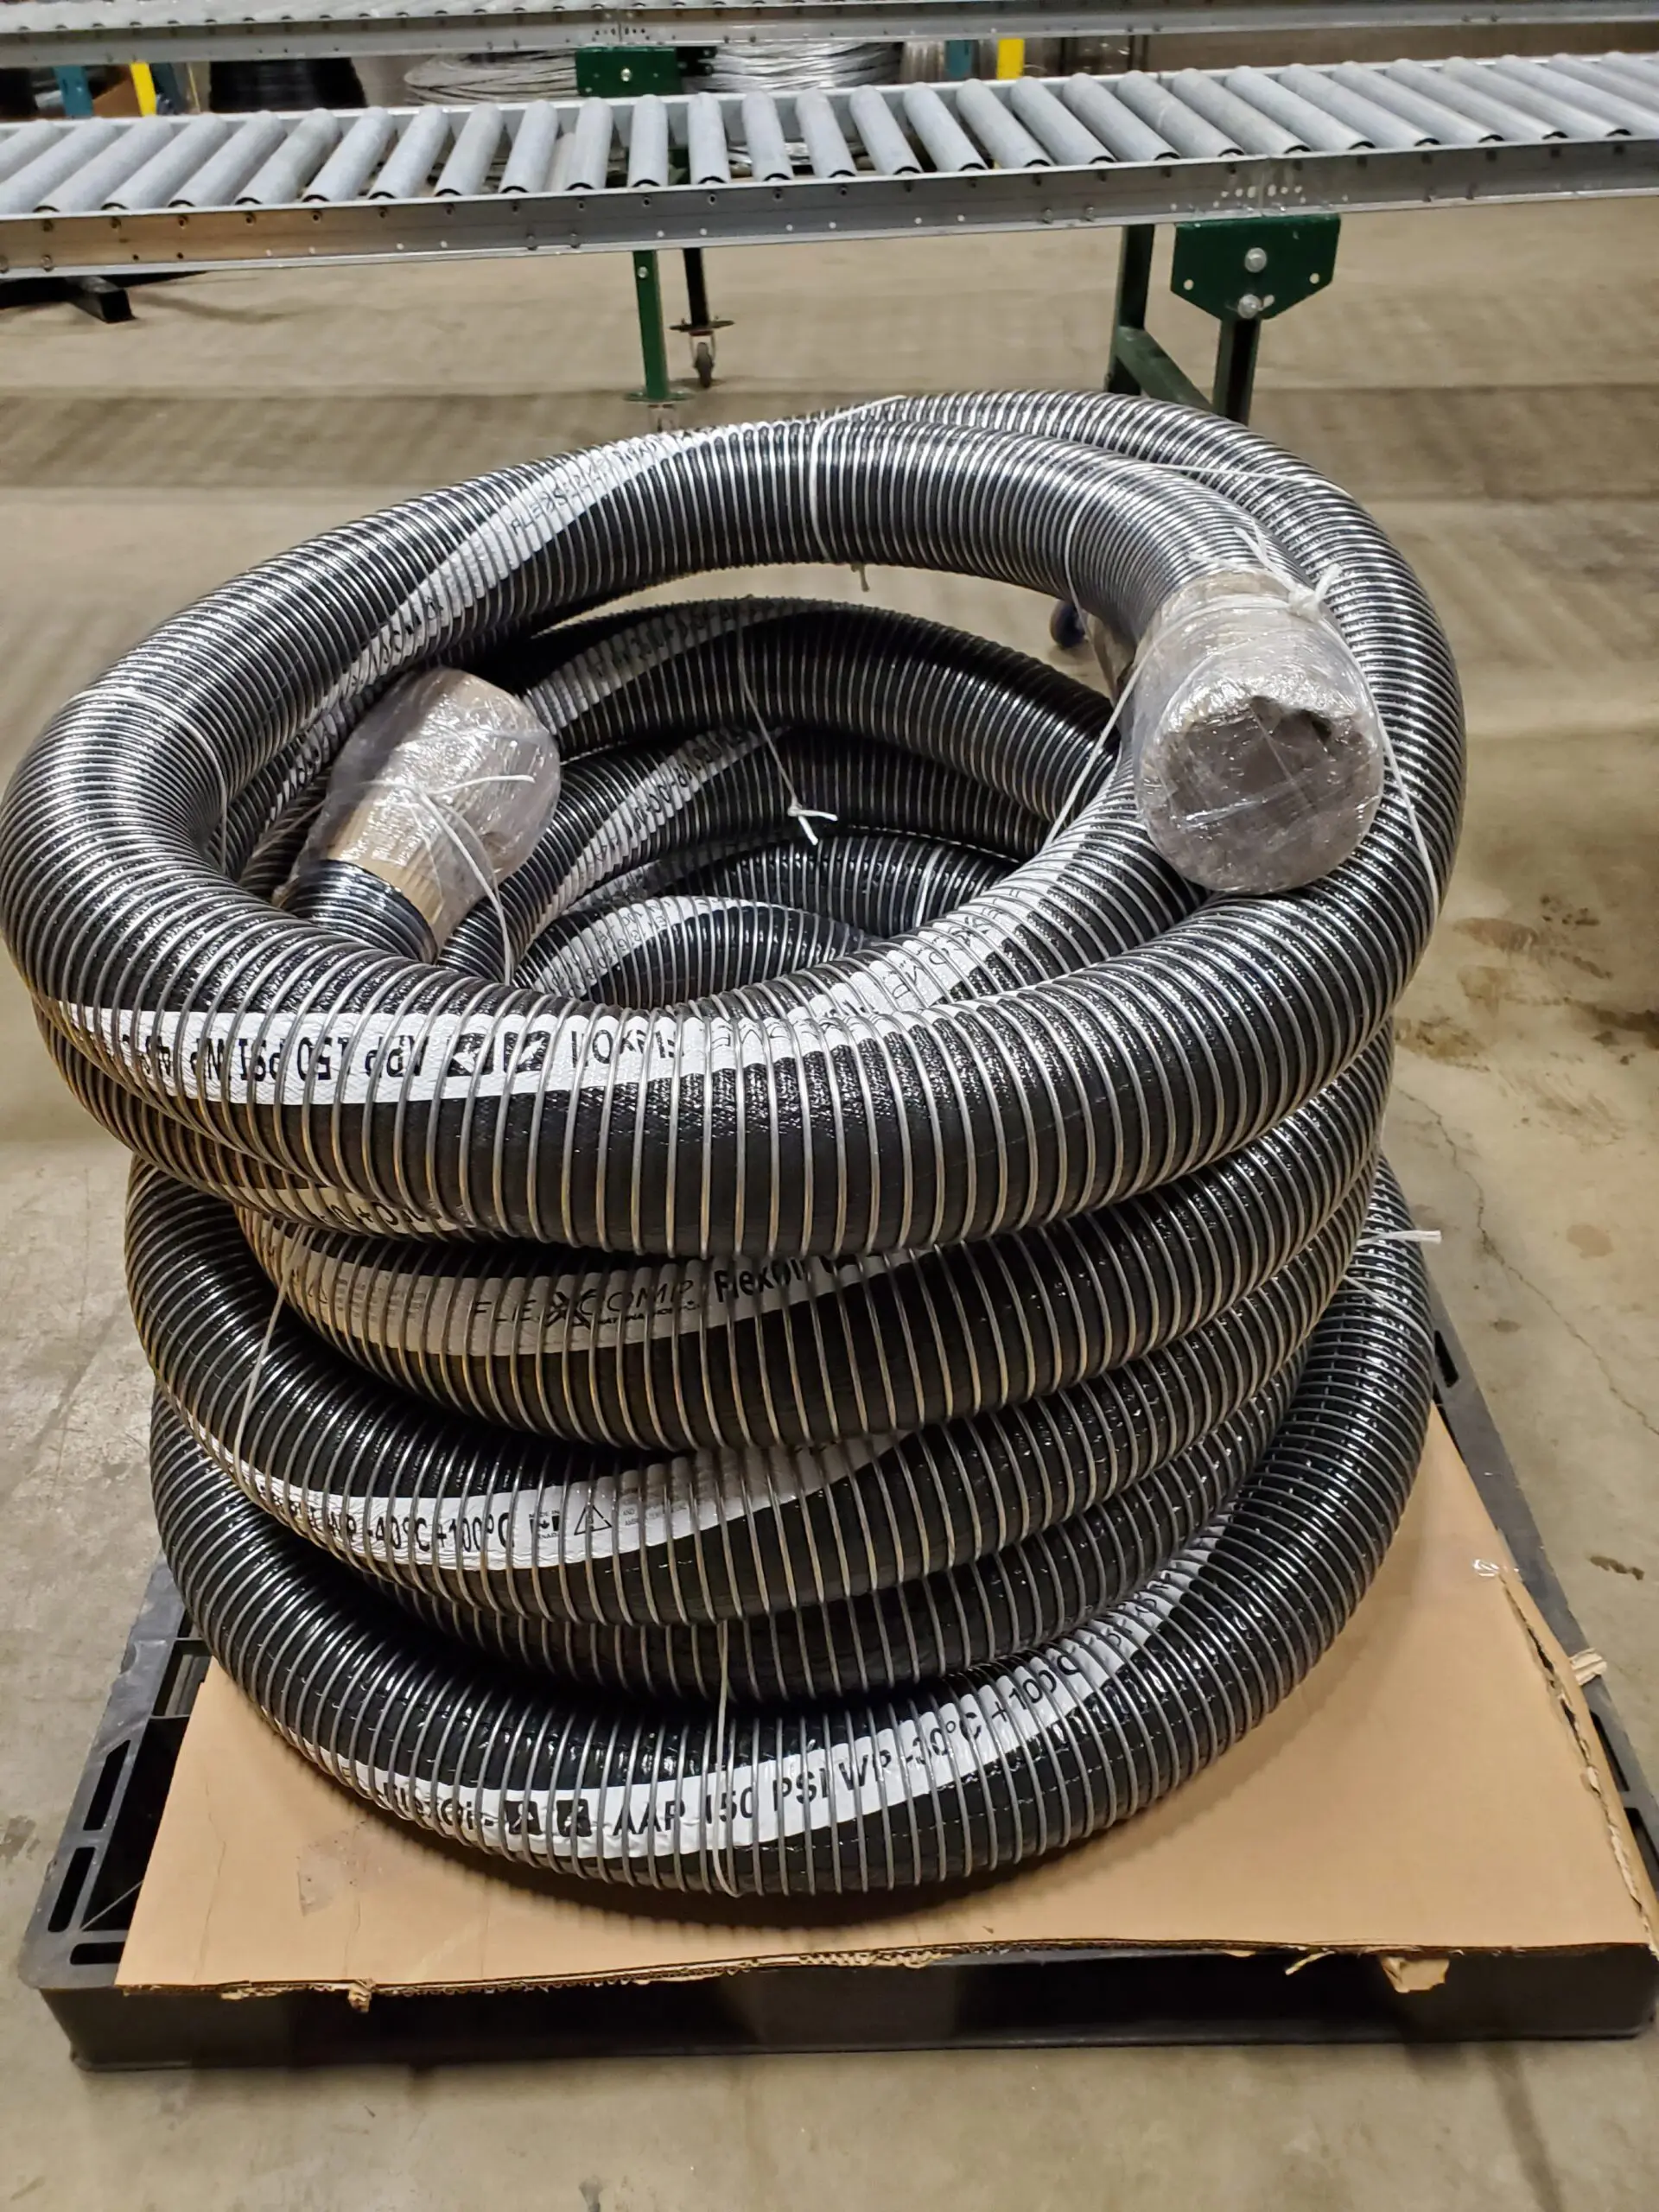 FlexComp hose, prepared for a customer